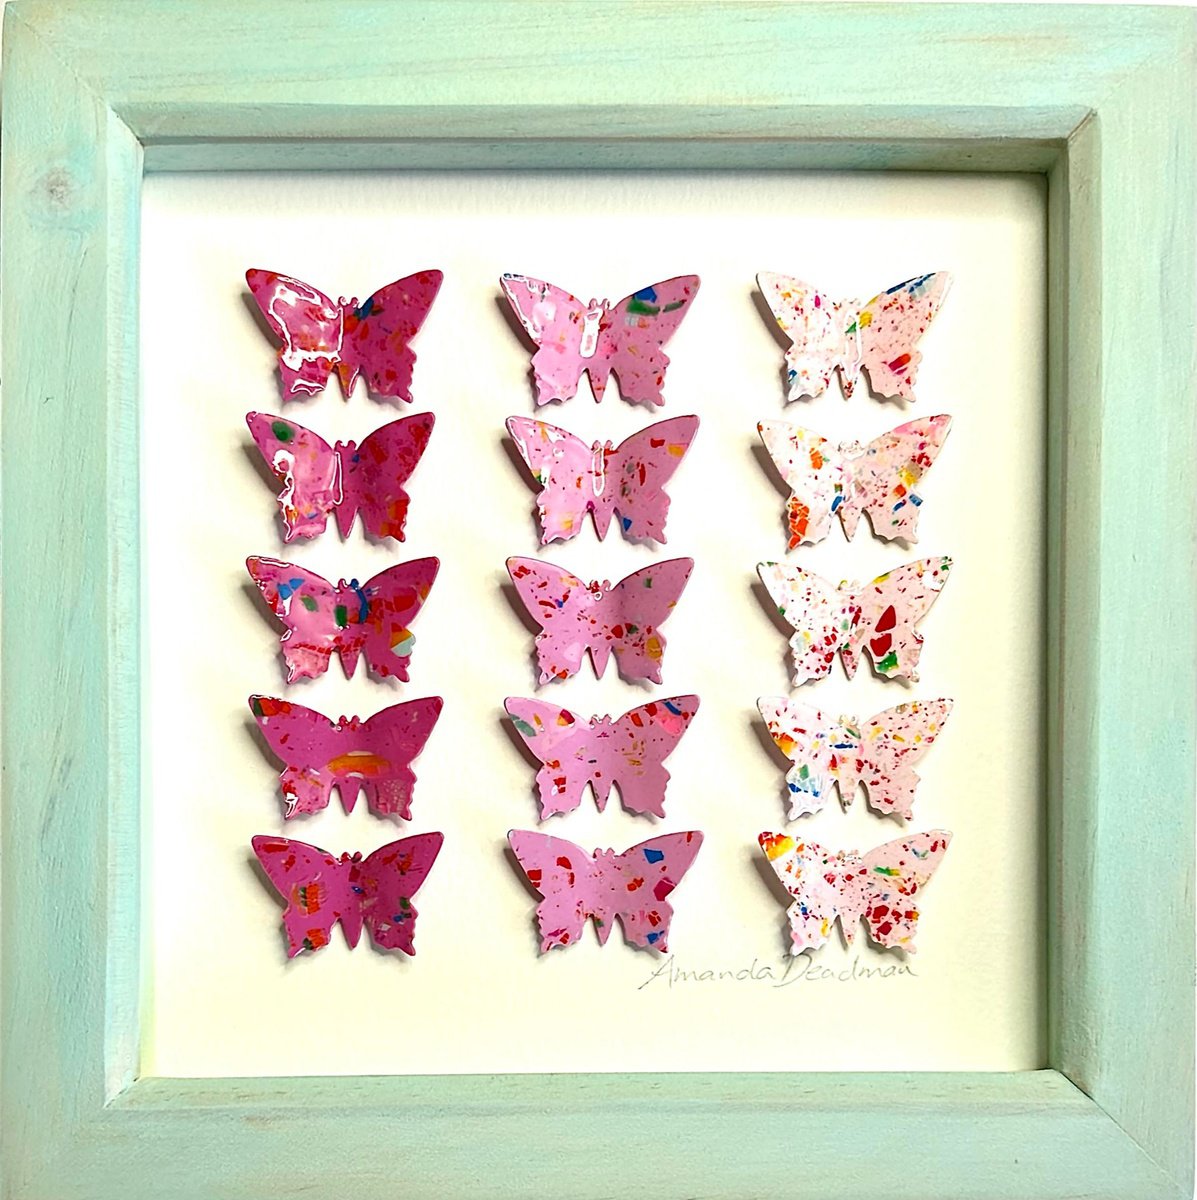 Quindici farfalle (Terrazzo) by Amanda Deadman